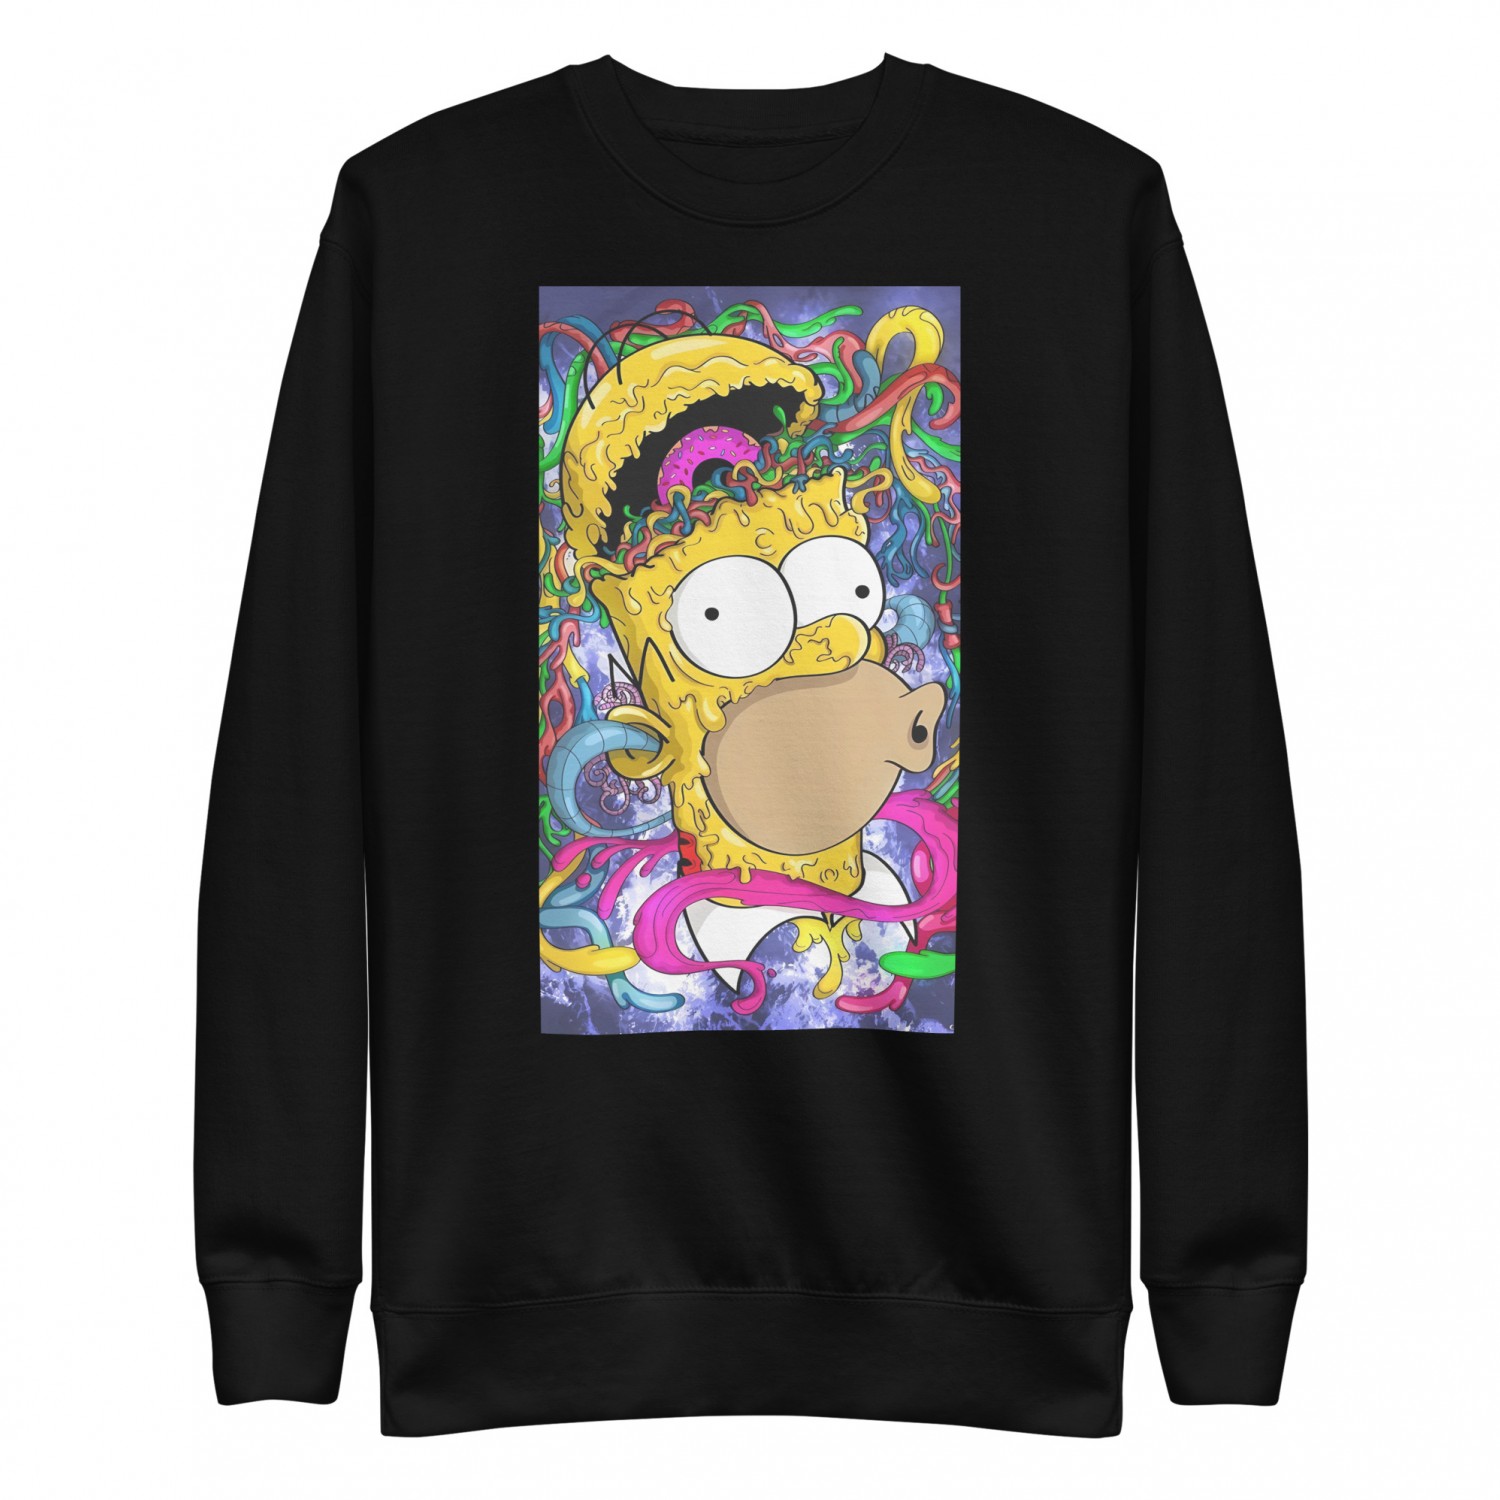 Kup ciepłą bluzę z nadrukiem Homera Simpsona